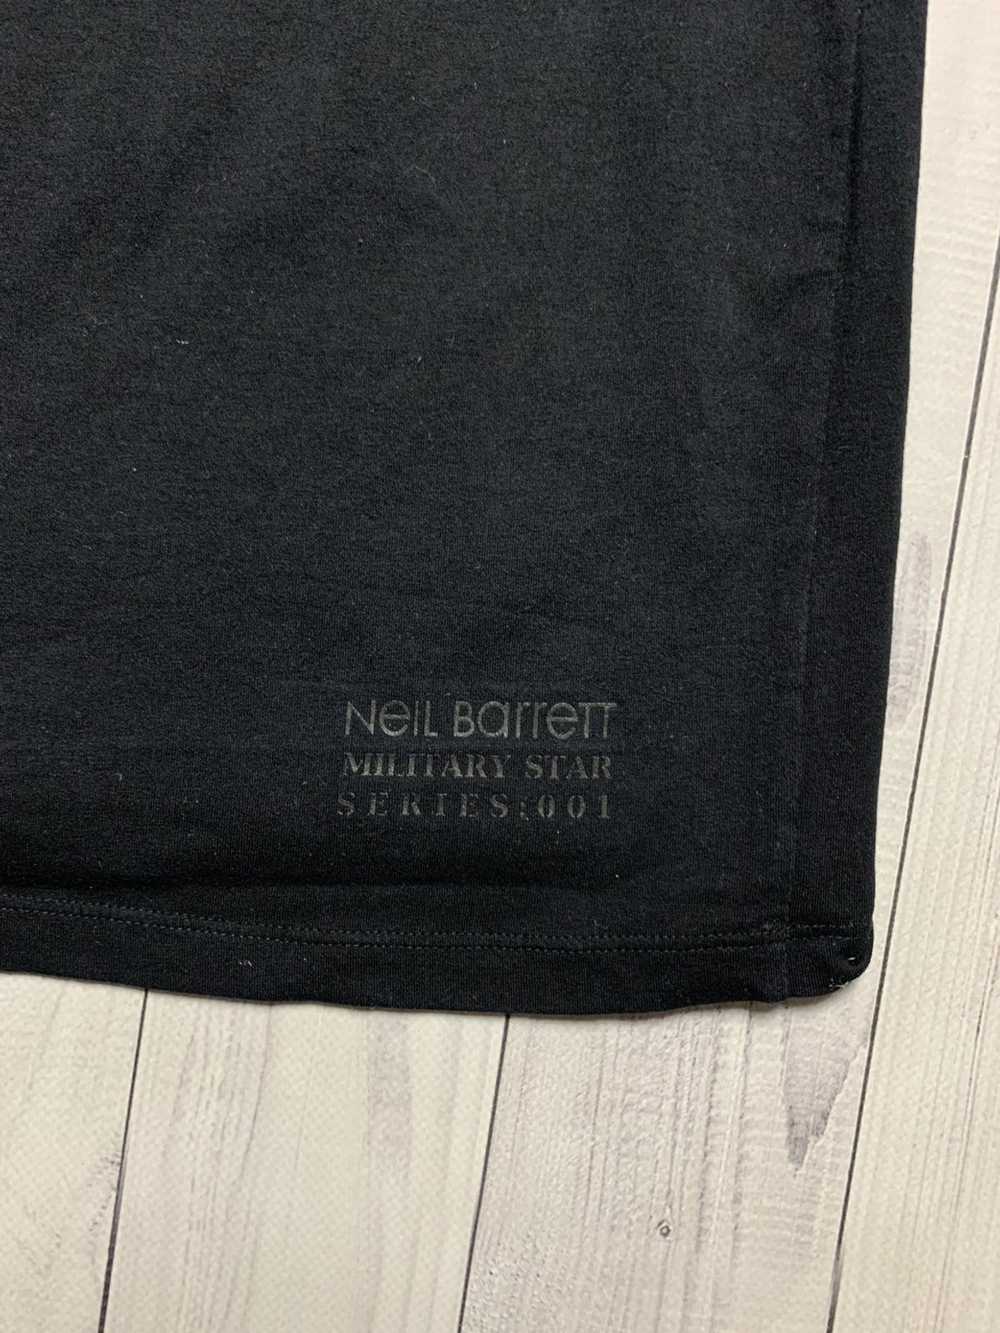 Luxury × Neil Barrett Neil Barrett tee size L bla… - image 7